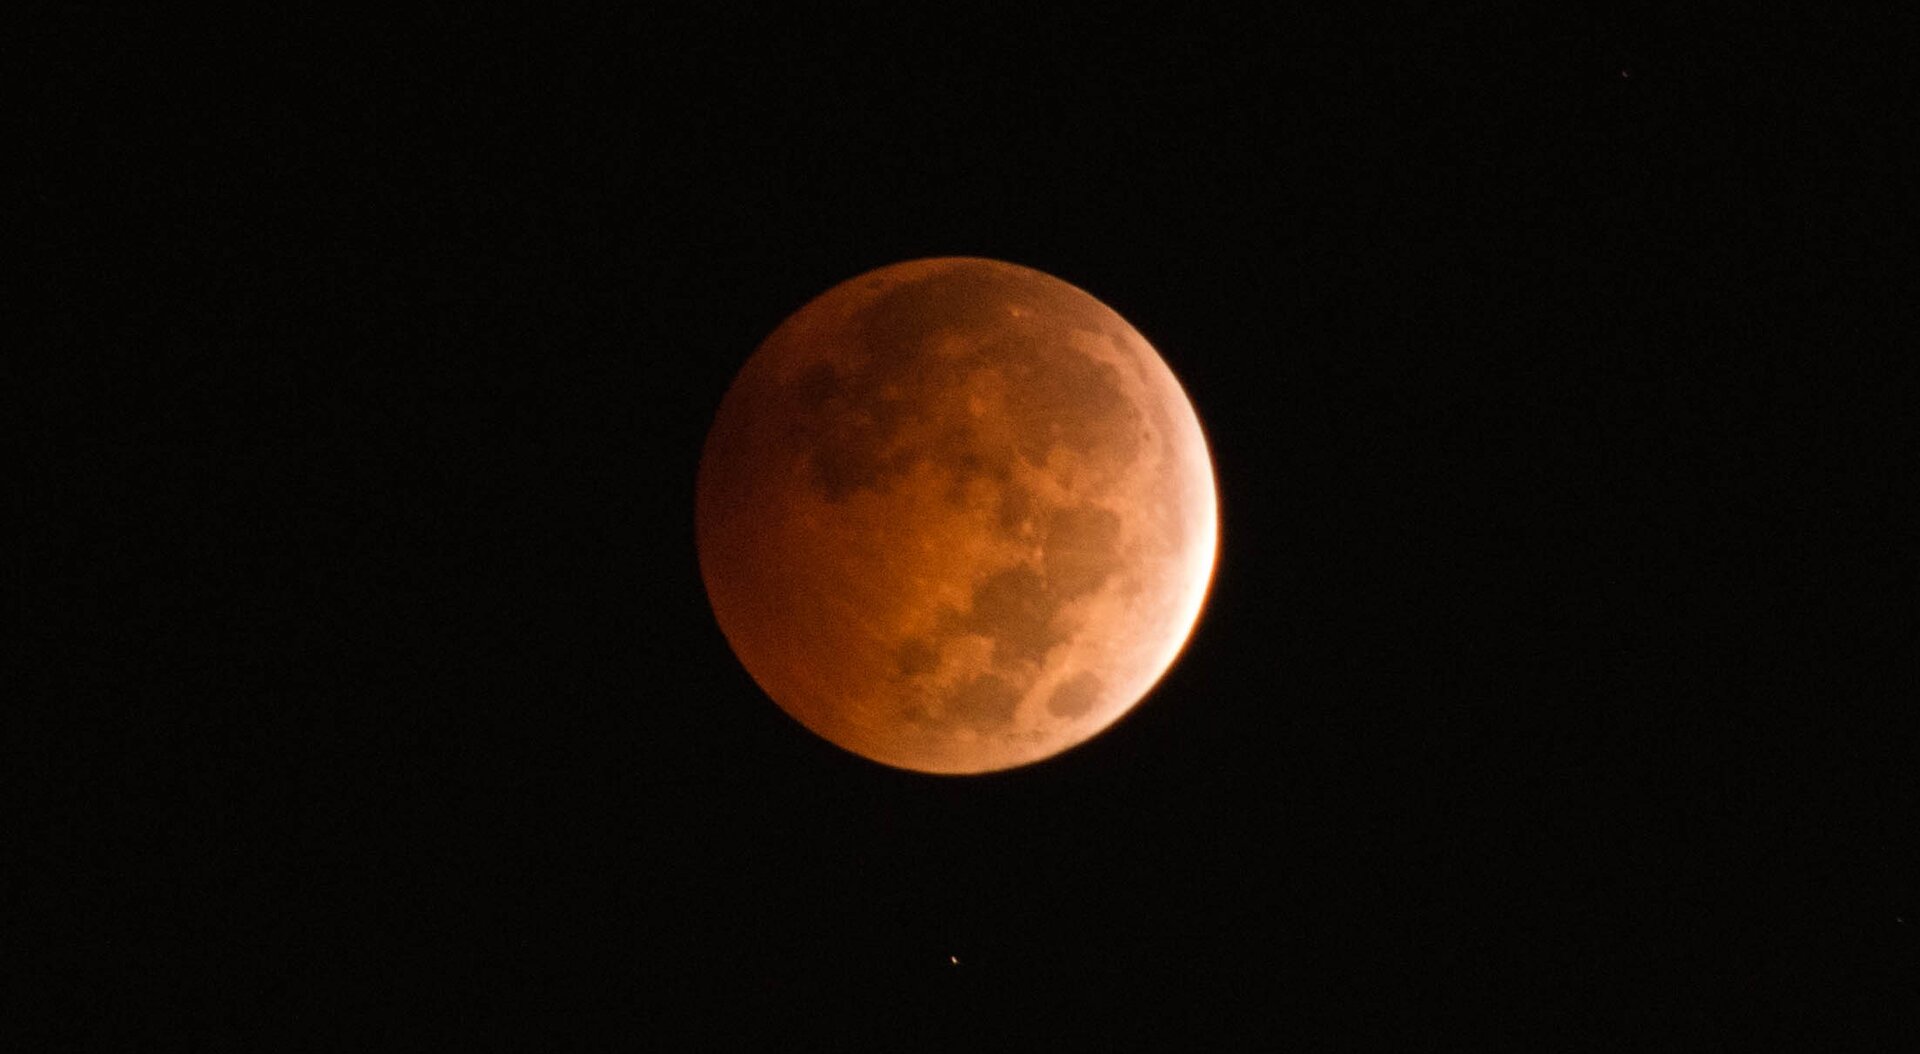 Księżyc w momencie bliskim całkowitego zaćmienia. Jest widoczny, ale przybiera barwę brunatno‑czerwoną.